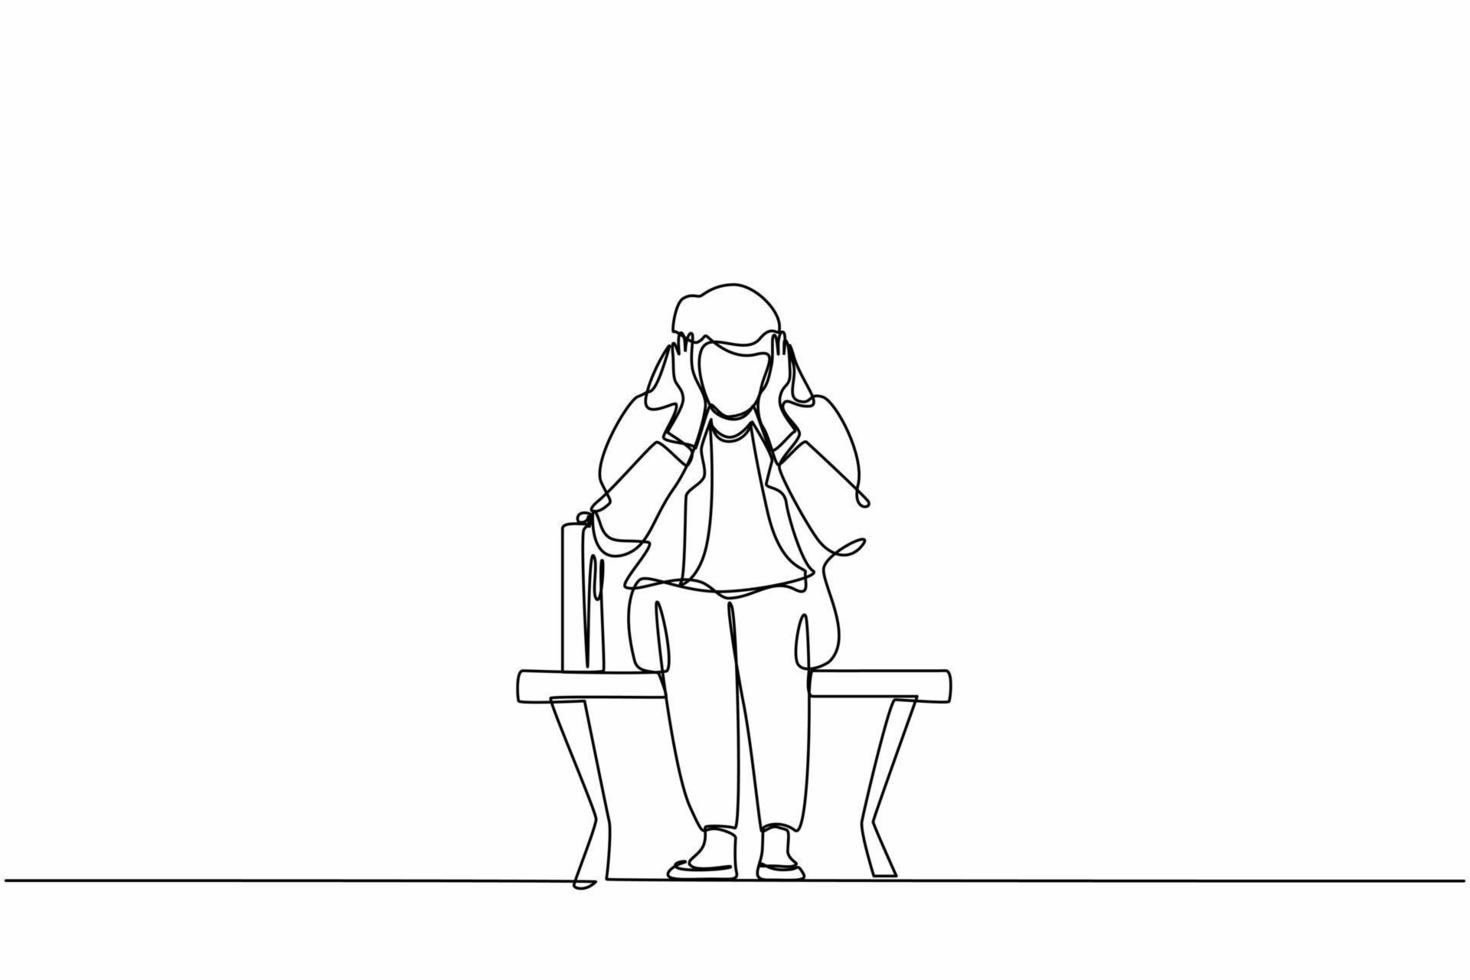 enkele een lijntekening triest zakenvrouw, depressie. eenzame vrouw zittend op een bankje. jong vrouwelijk personage dat haar hoofd vasthoudt. mislukking concept. ononderbroken lijn ontwerp grafische vectorillustratie vector